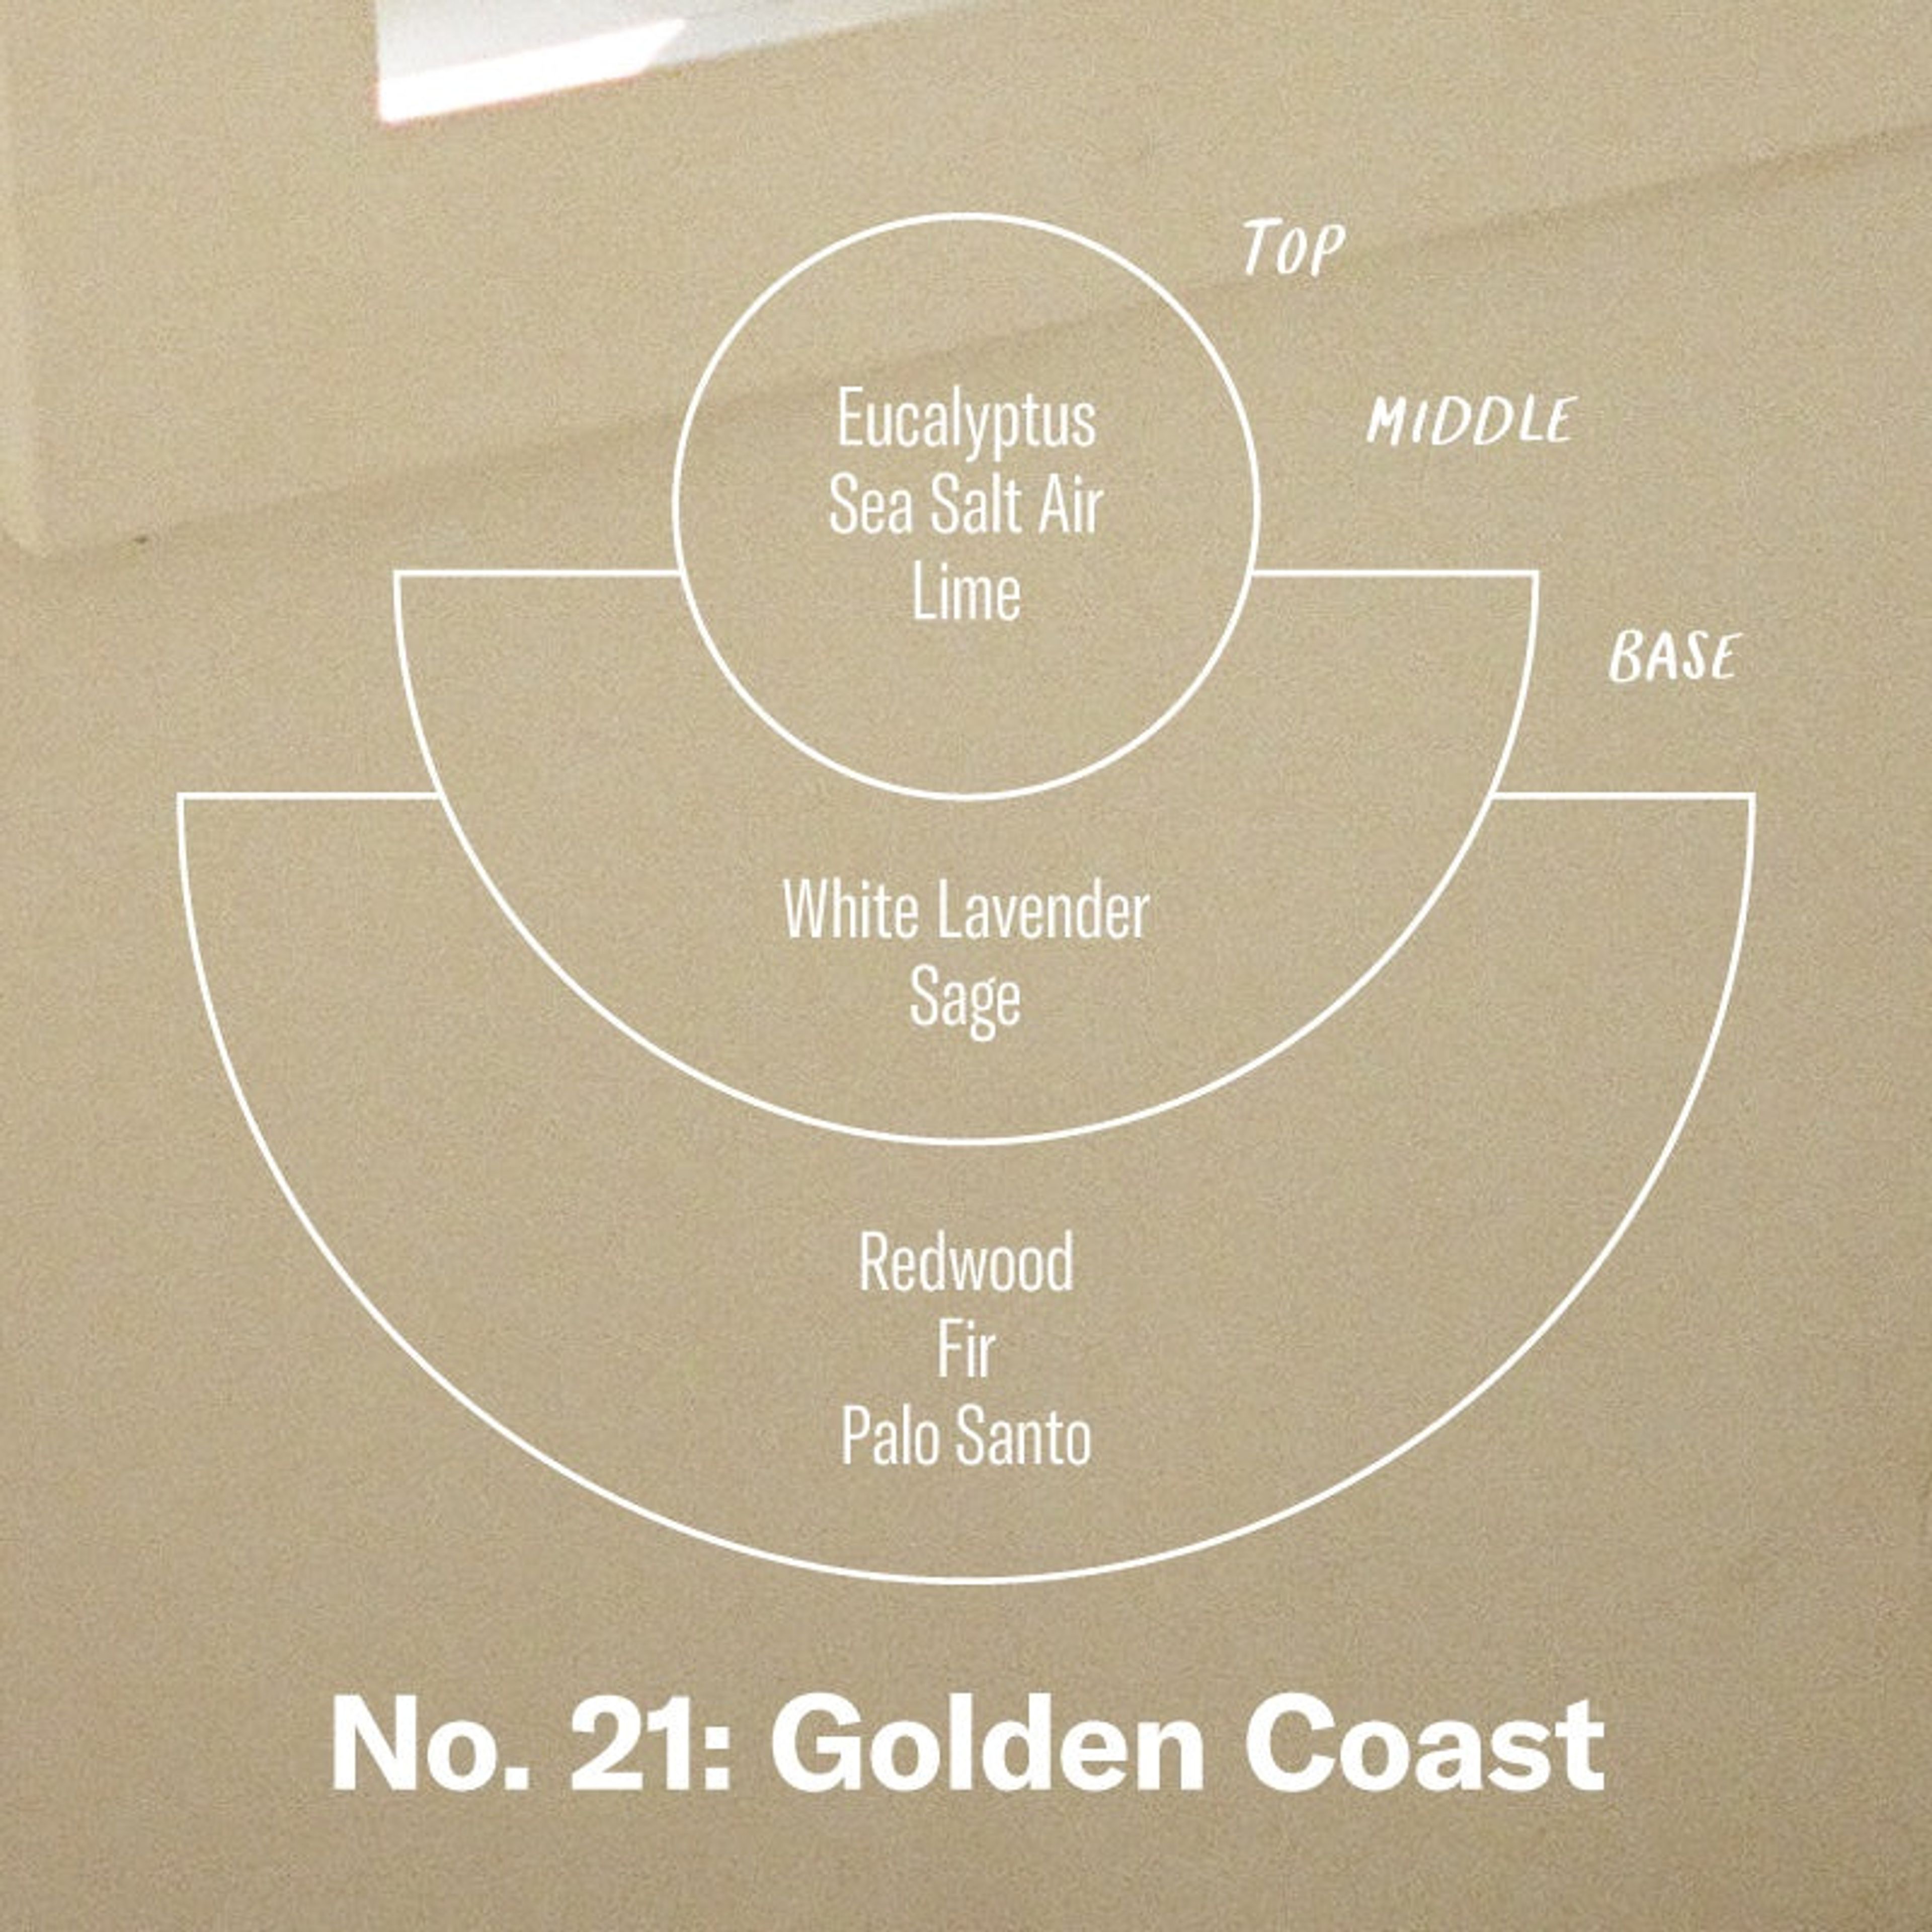 Golden Coast– Room & Linen Spray